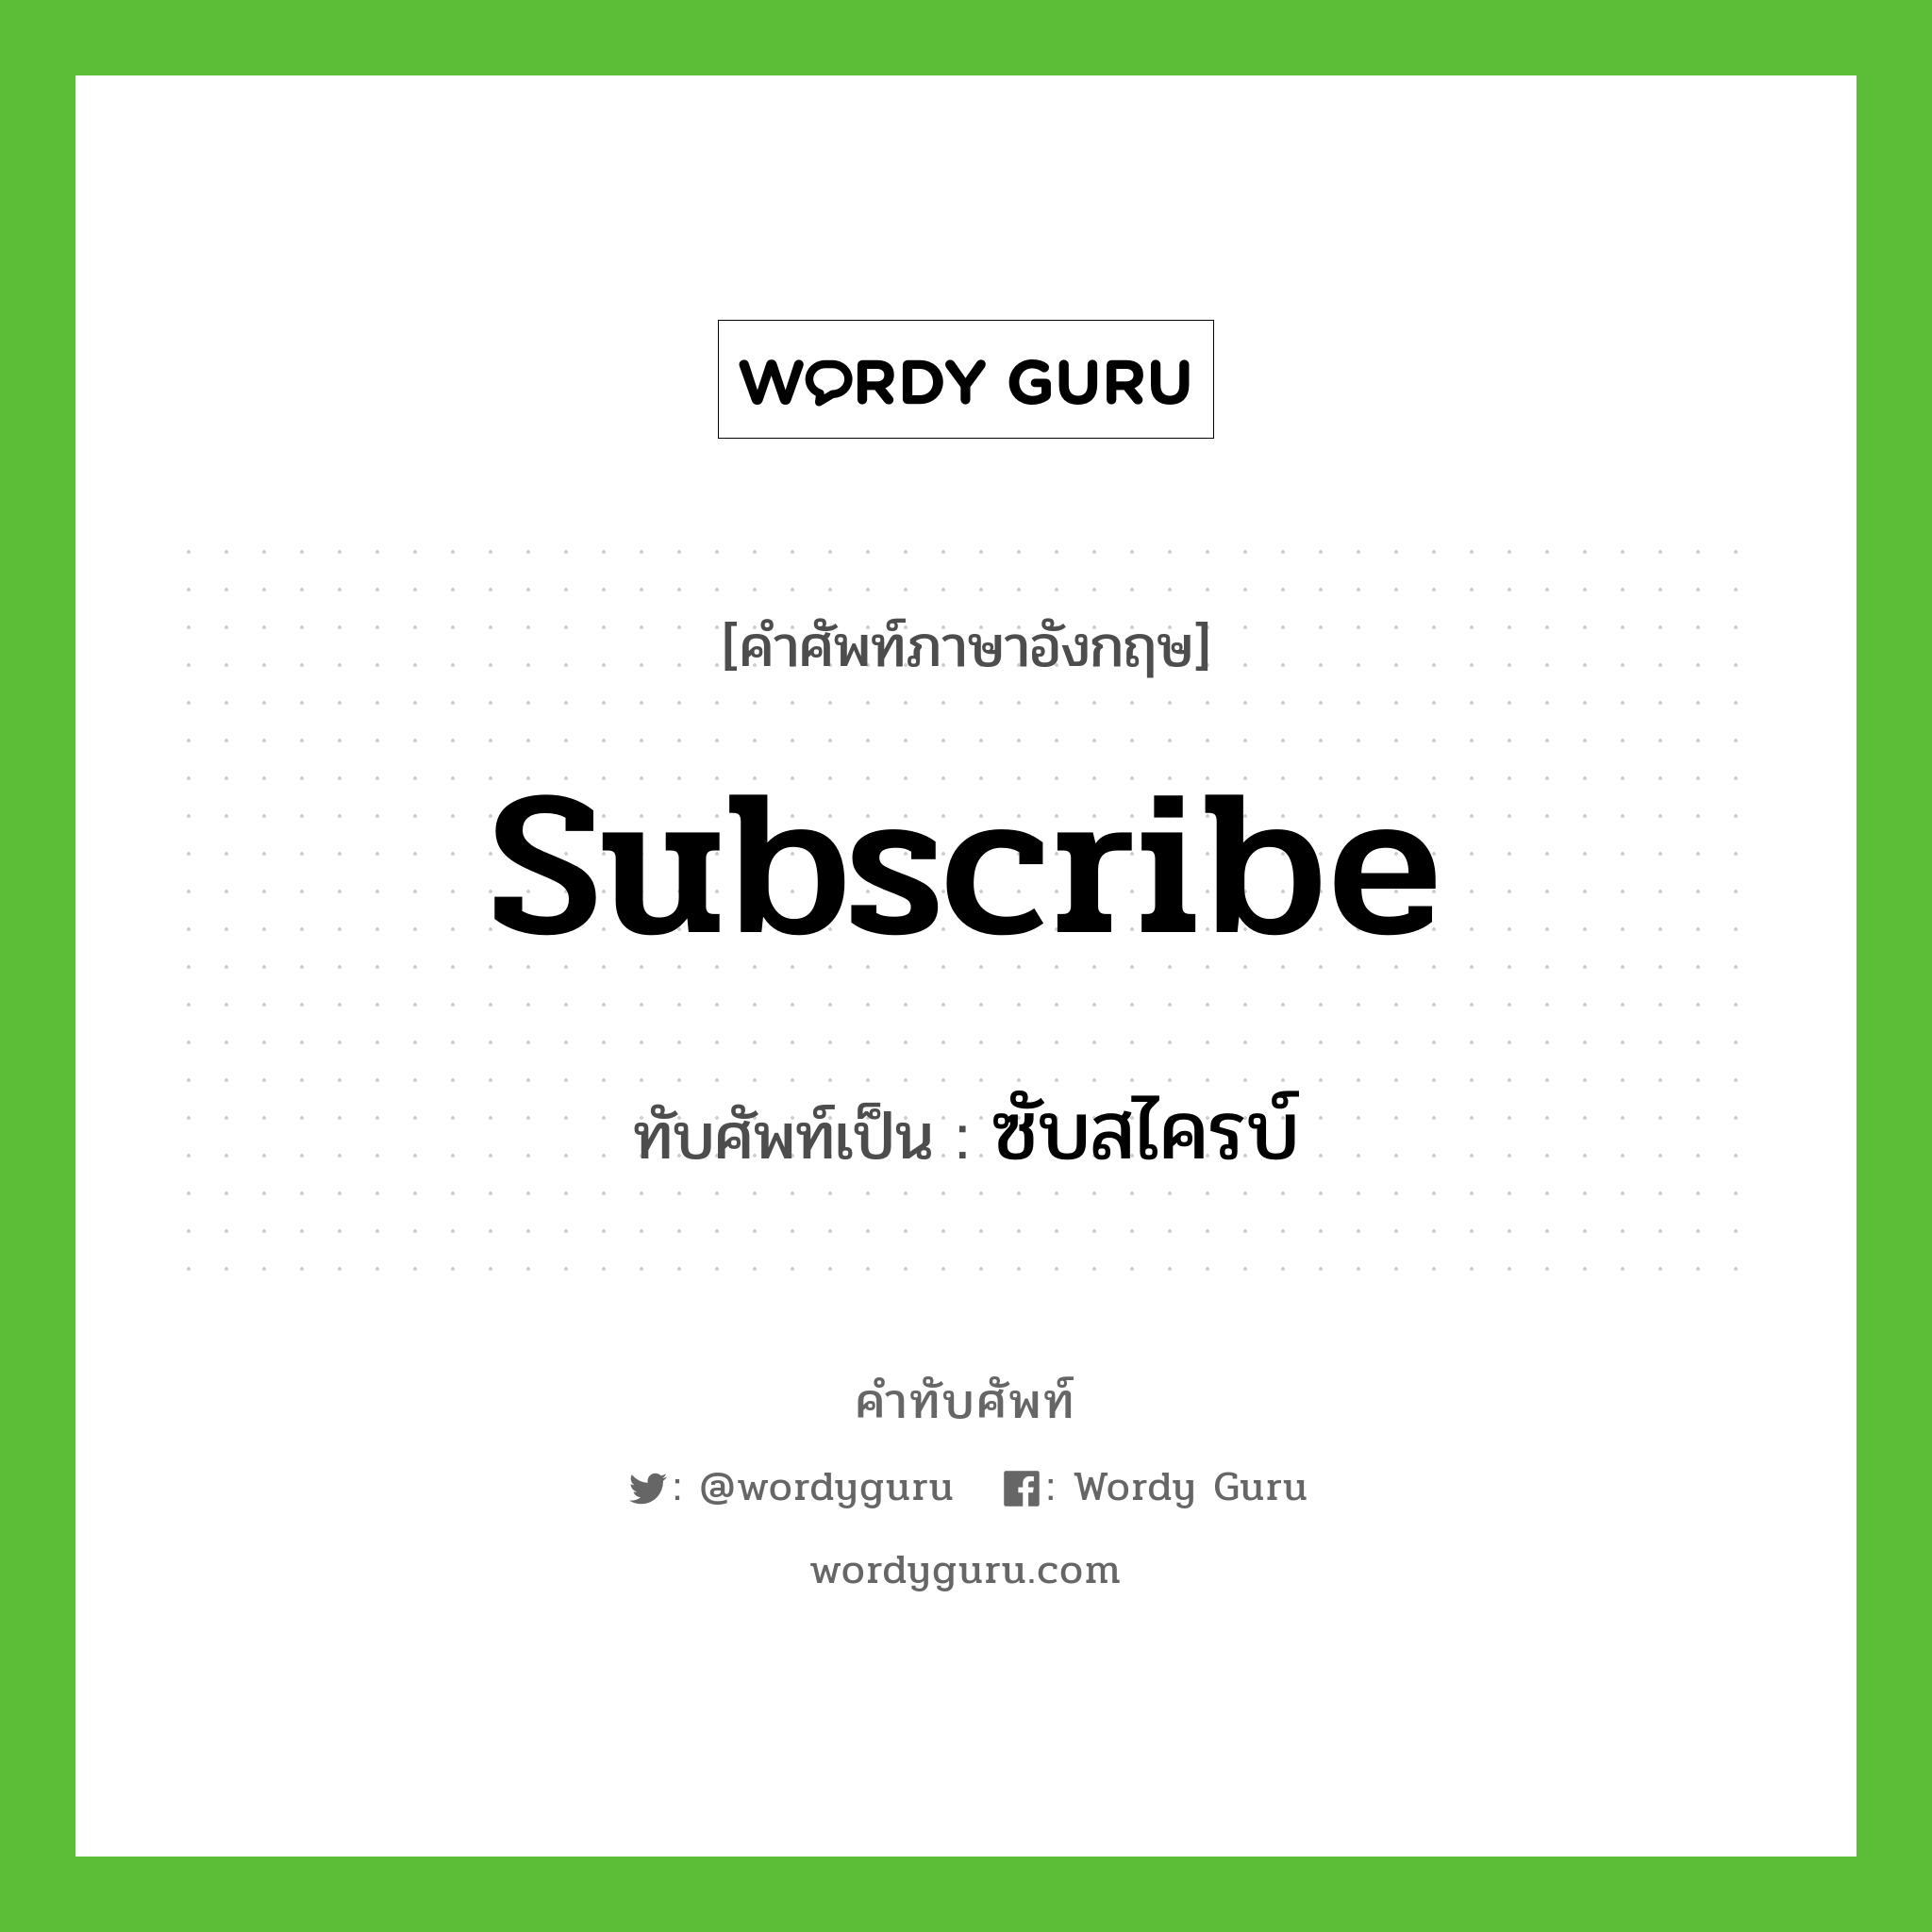 subscribe เขียนเป็นคำไทยว่าอะไร?, คำศัพท์ภาษาอังกฤษ subscribe ทับศัพท์เป็น ซับสไครบ์